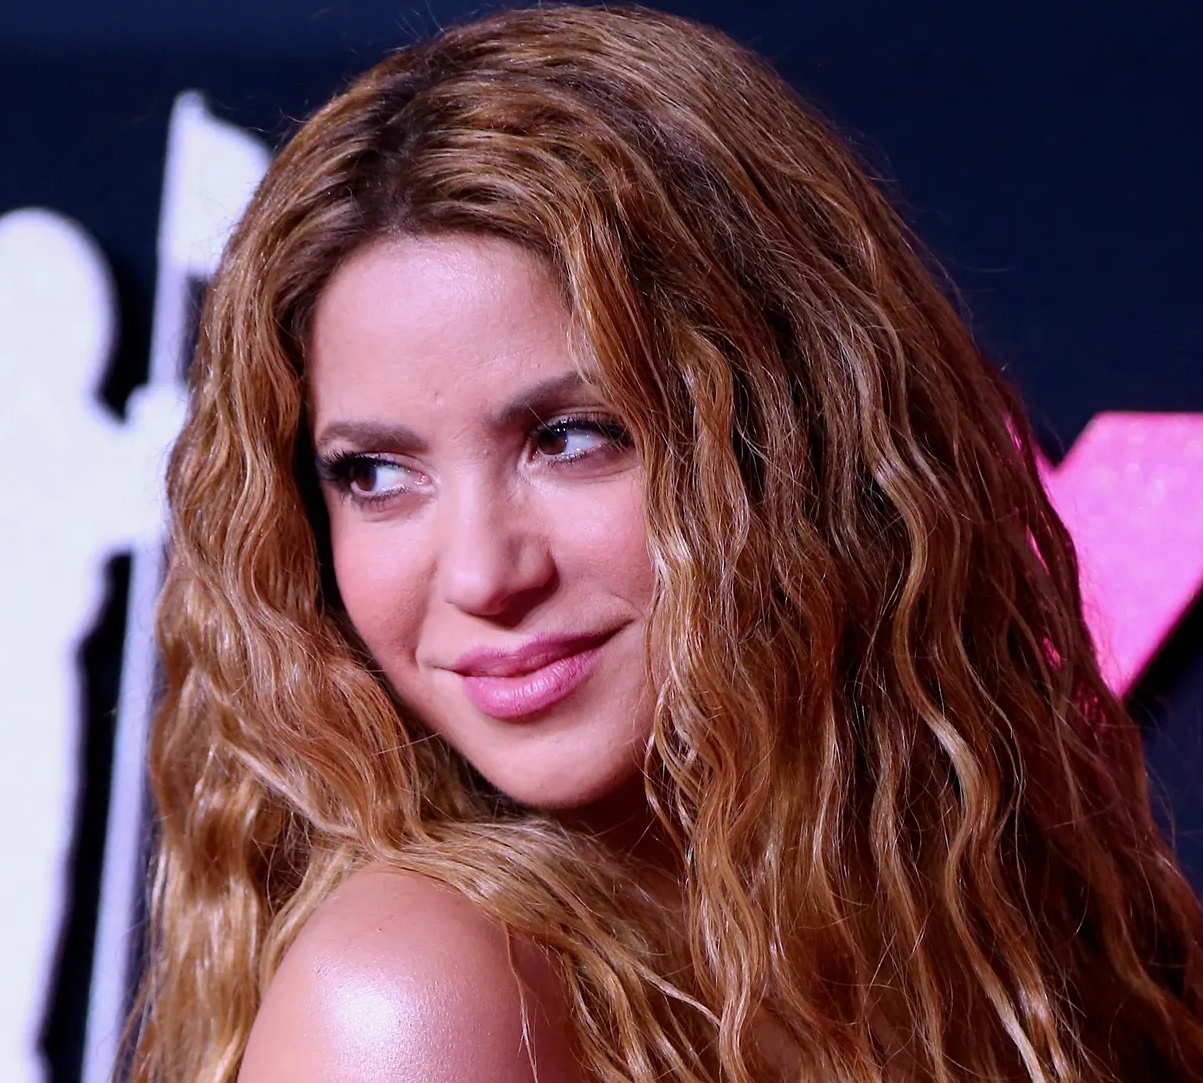 La nuova revenge song di Shakira, questa volta contro il padre di Gerard Piqué